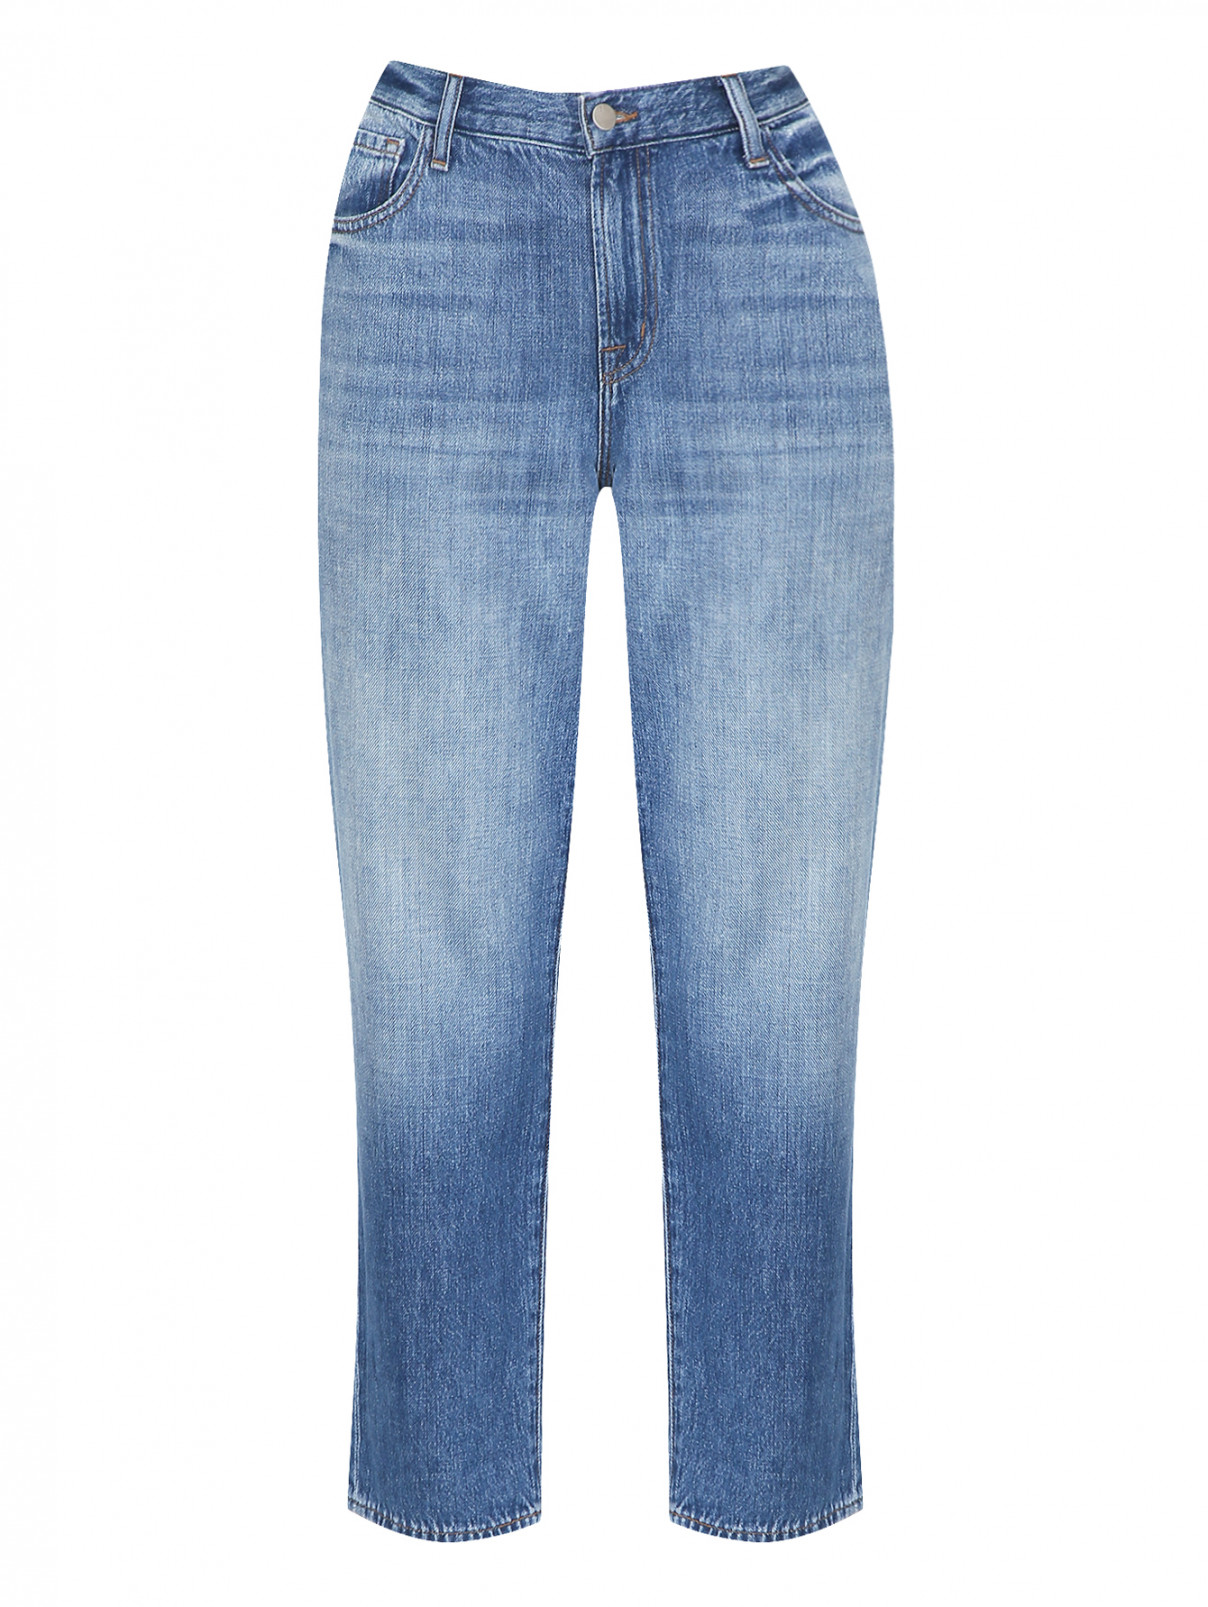 Укороченные джинсы с потертостями J Brand  –  Общий вид  – Цвет:  Синий